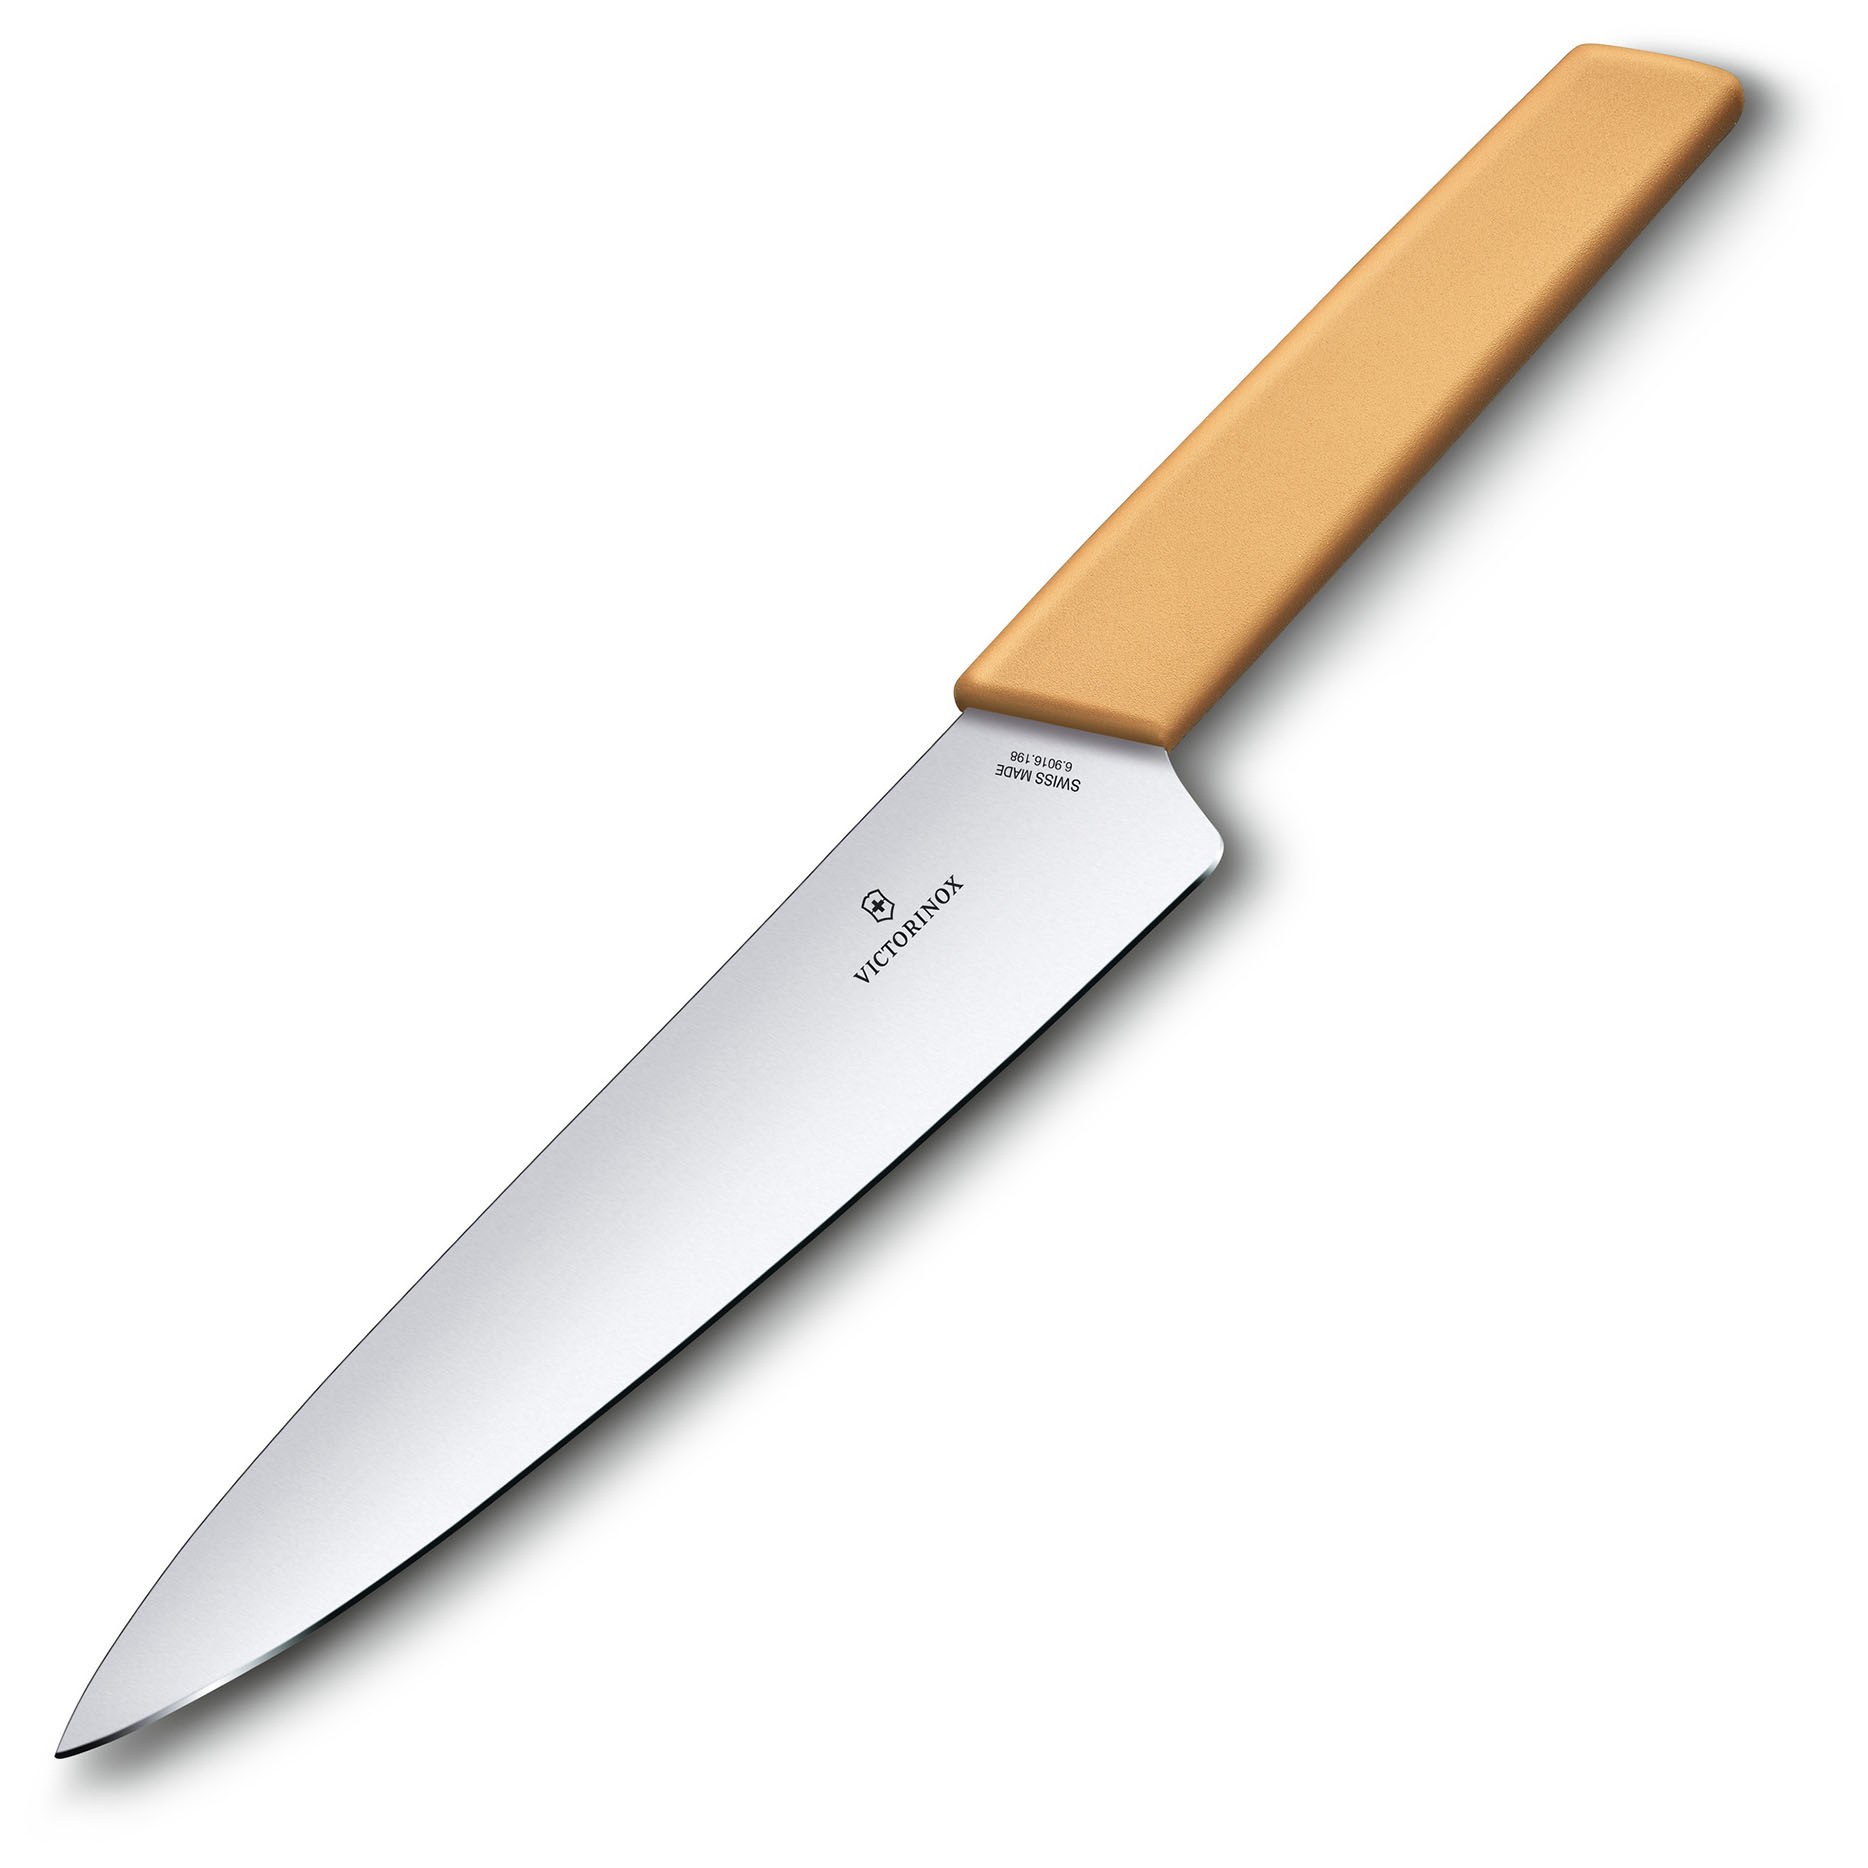 Нож кухонный Victorinox Swiss Modern (6.9016.198B) стальной разделочный лезв.190мм прямая заточка желтый блистер